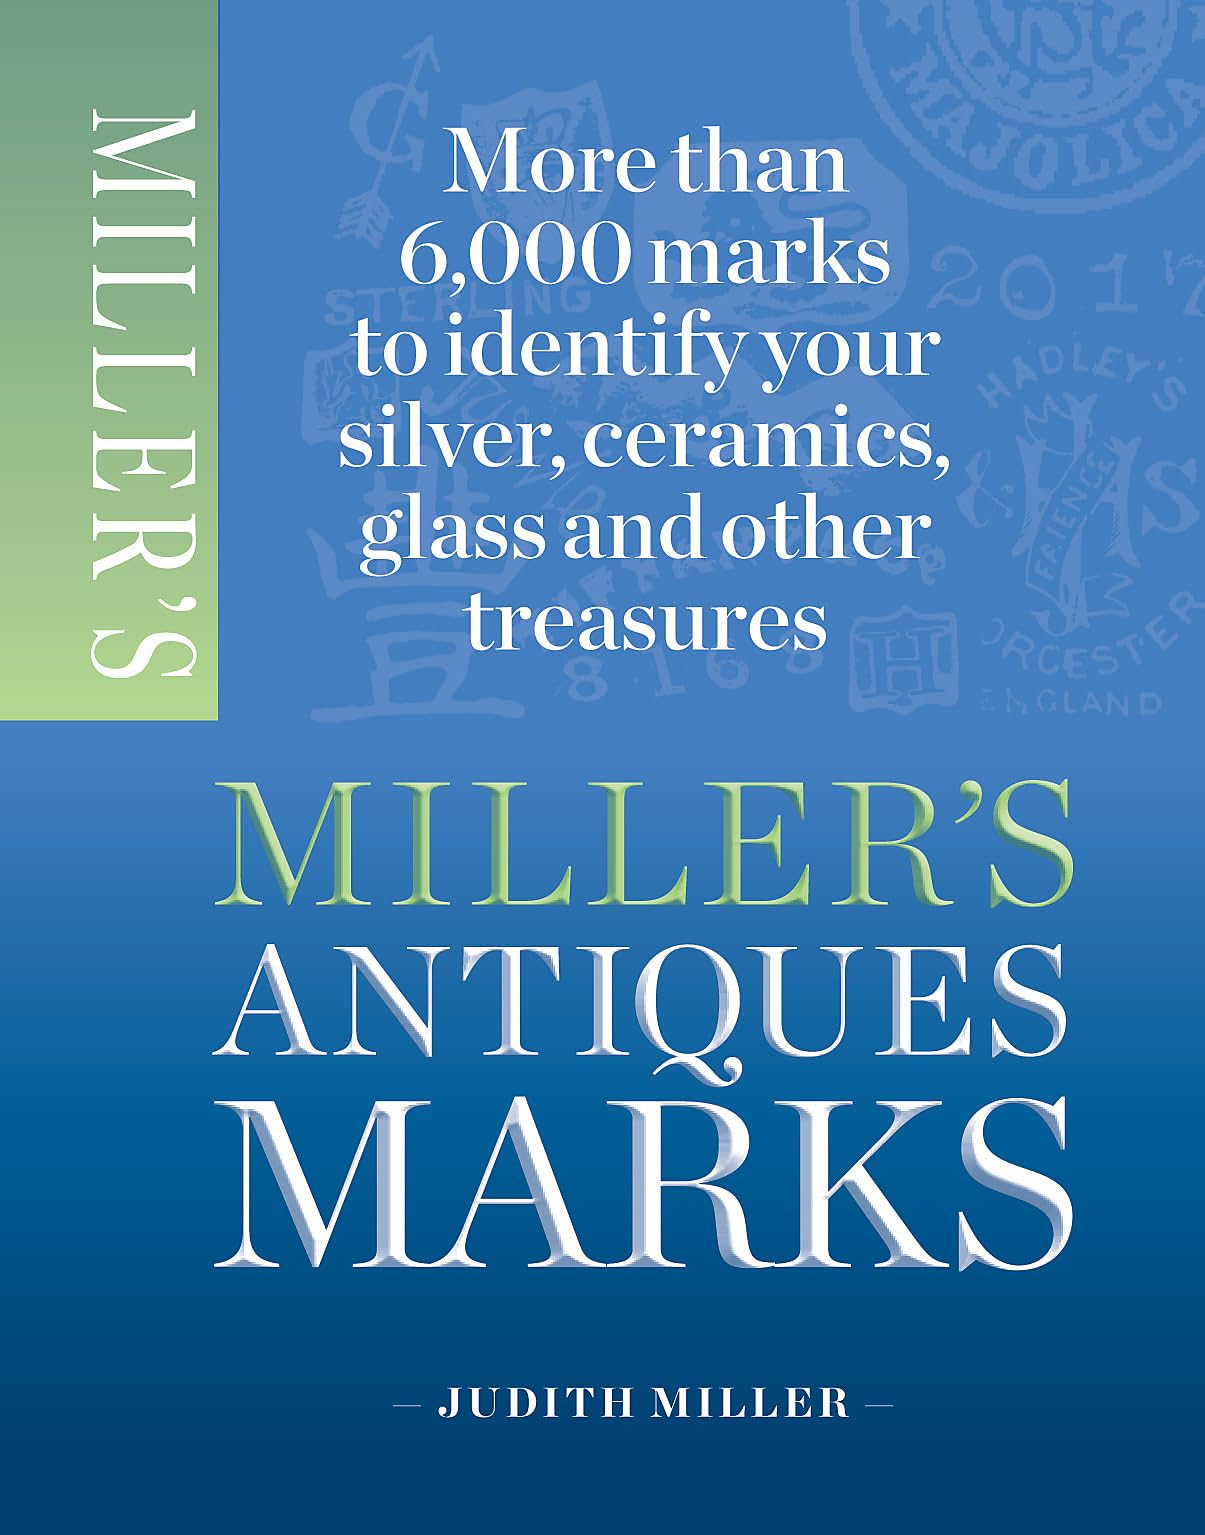 Miller's Antique Marks